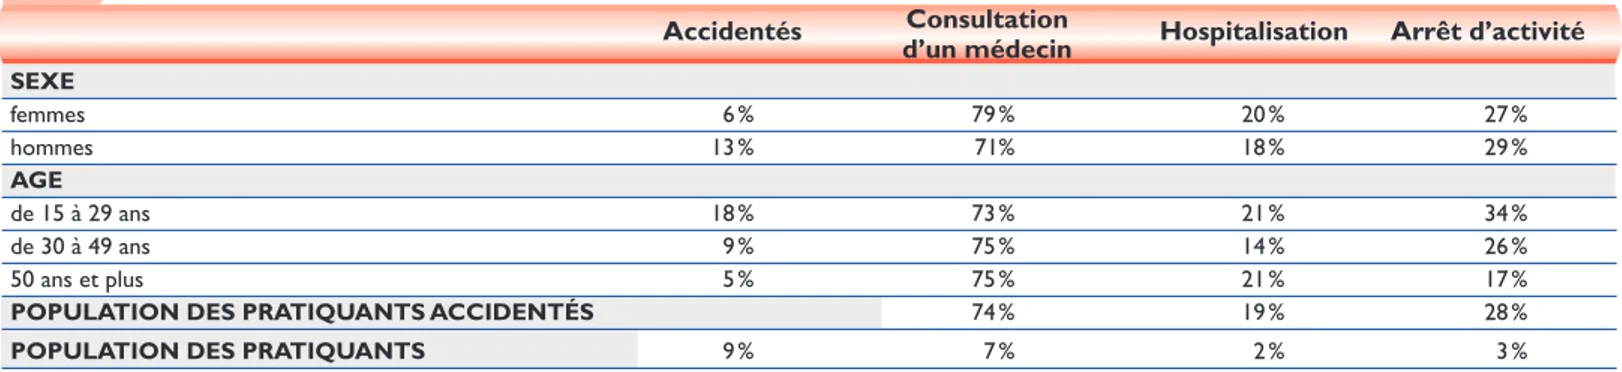 Tableau 2 Répartition des pratiquants accidentés selon leur sexe, leur âge et la gravité de l’accident 